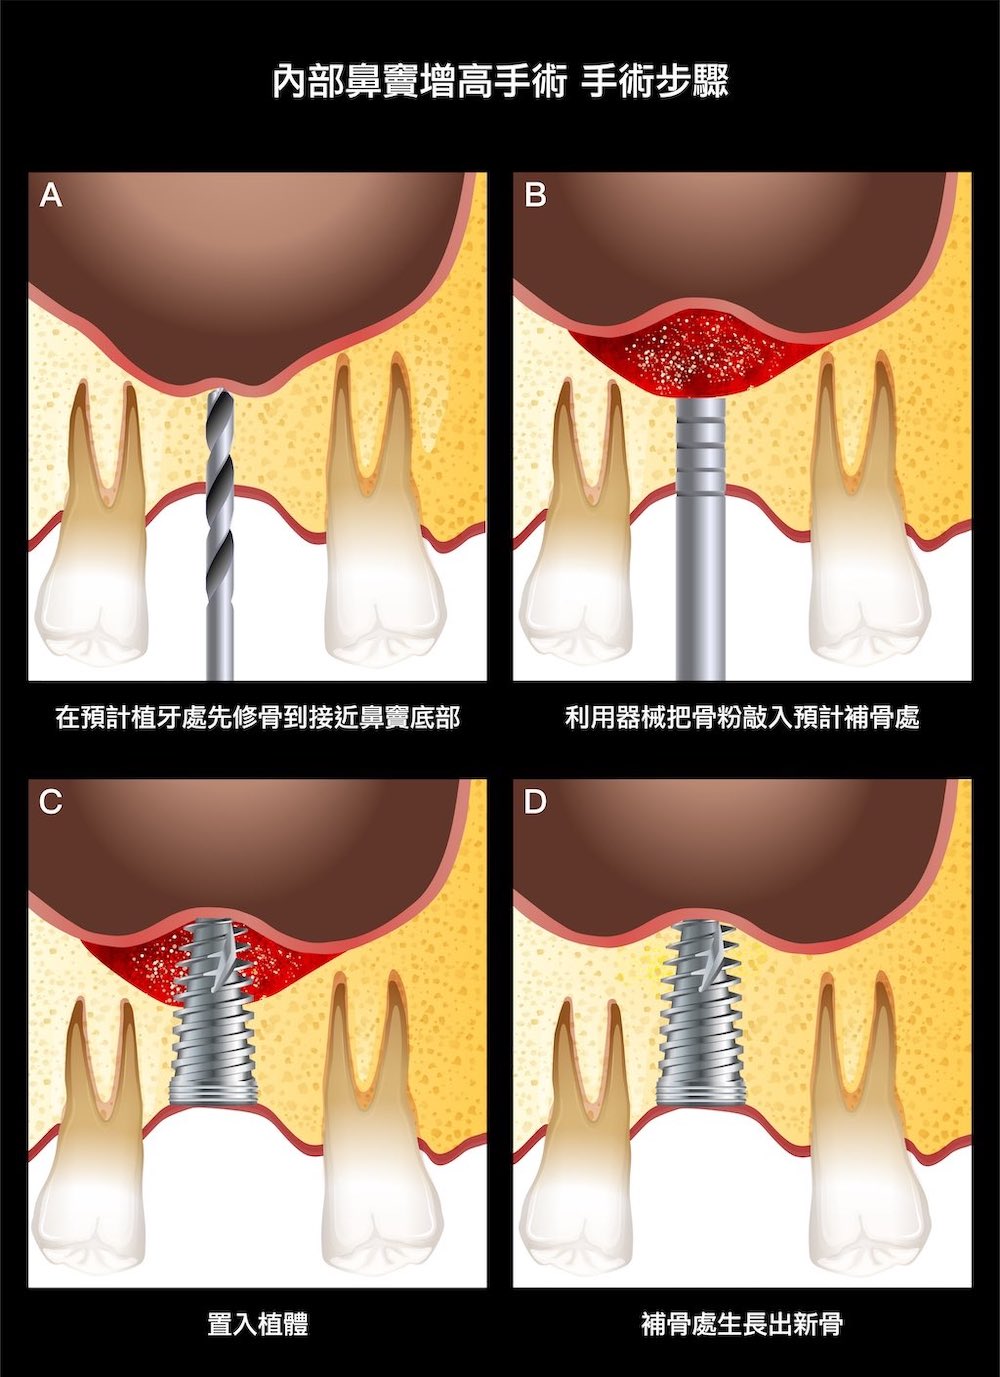 鼻竇增高術-內部鼻竇增高術-手術步驟-上顎植牙-植牙補骨-葉立維醫師-桃園